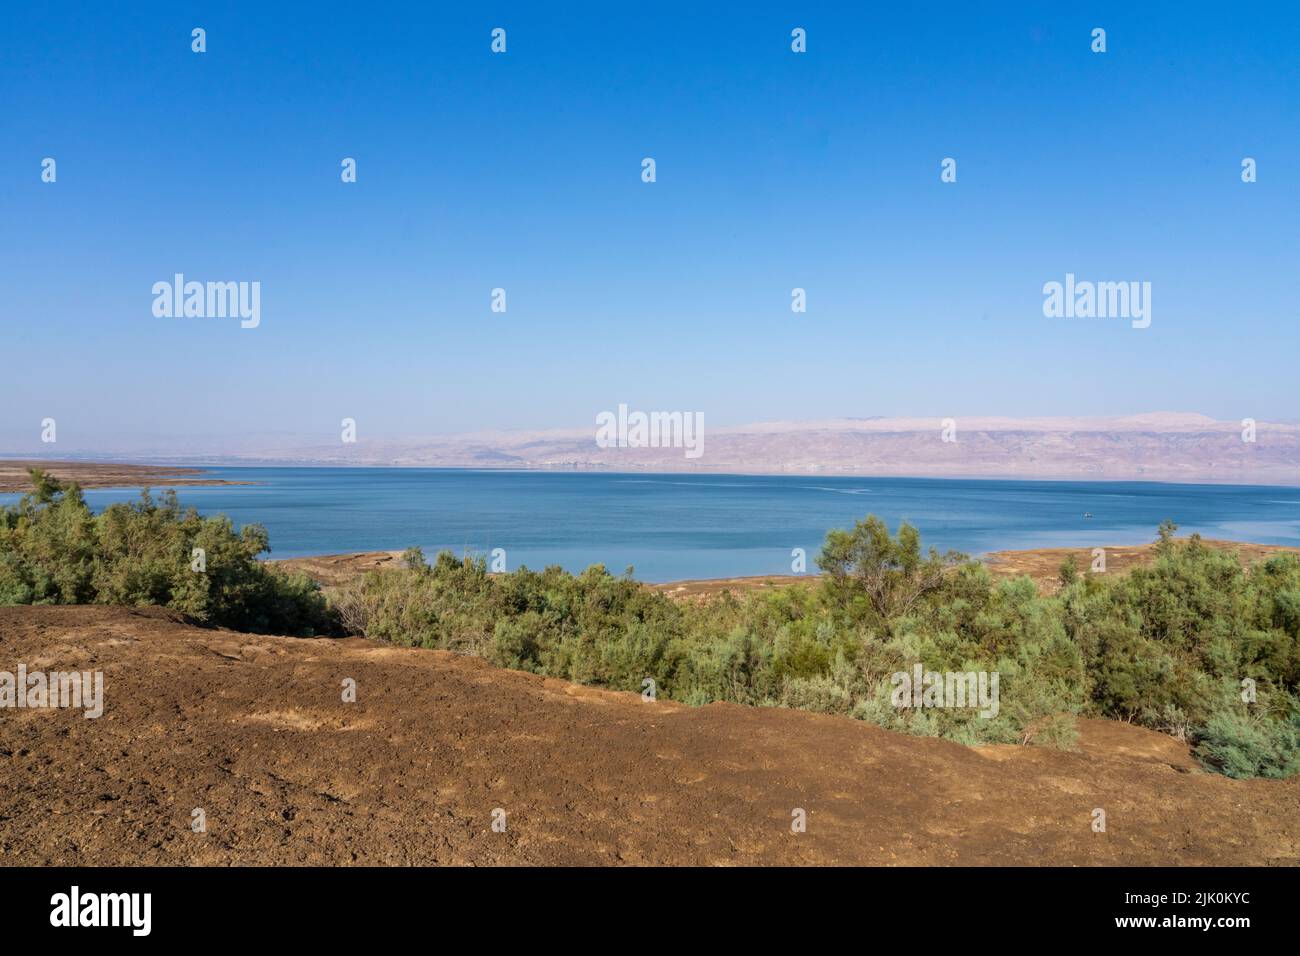 Ein Feshkha (Einot Tzukim) es una reserva natural y sitio arqueológico en la costa noroeste del Mar muerto, a unos tres kilómetros al sur de Qumr Foto de stock